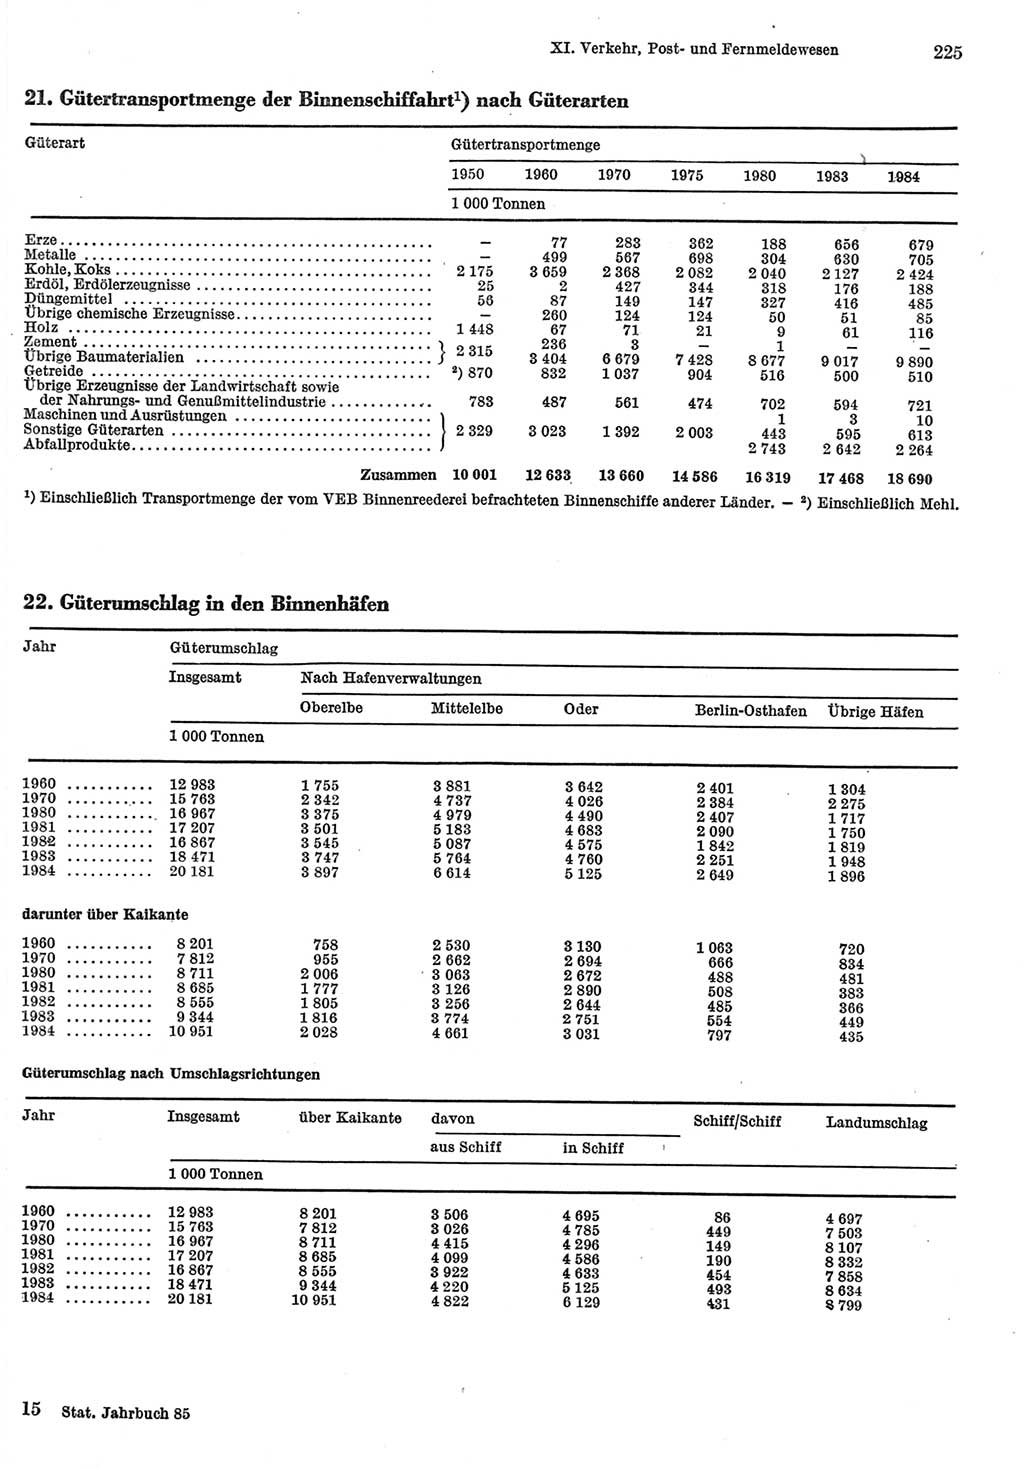 Statistisches Jahrbuch der Deutschen Demokratischen Republik (DDR) 1985, Seite 225 (Stat. Jb. DDR 1985, S. 225)